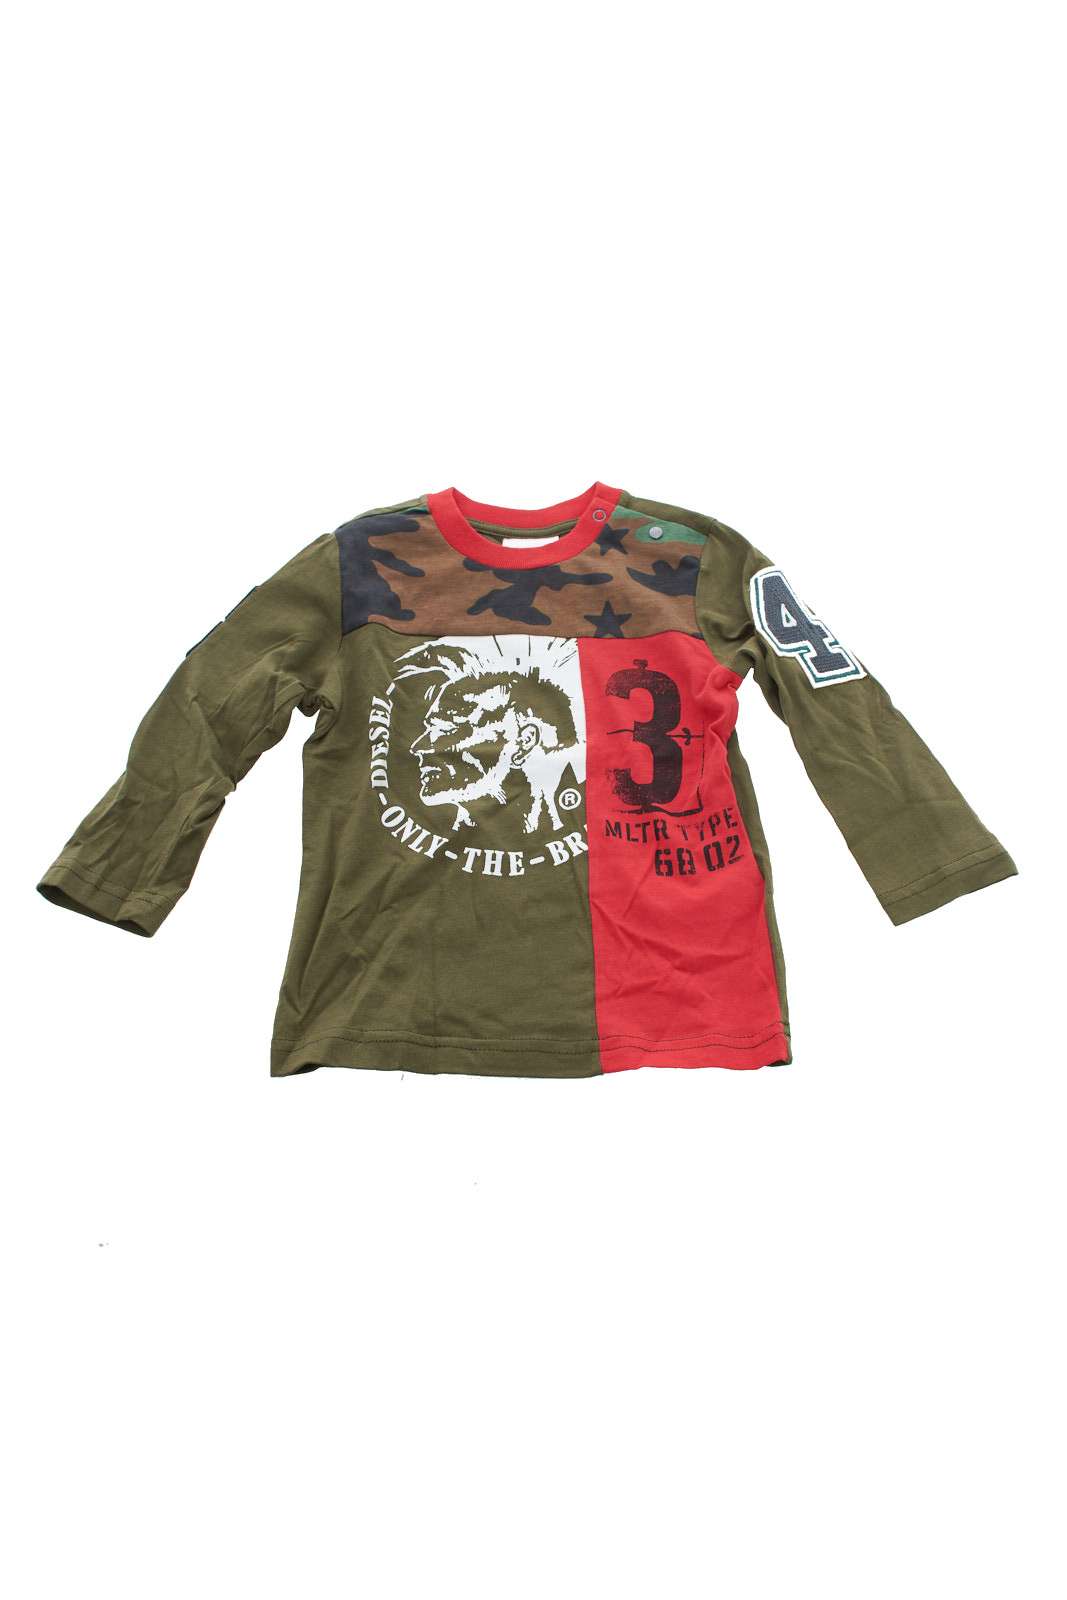 Diesel T shirt Child camouflage